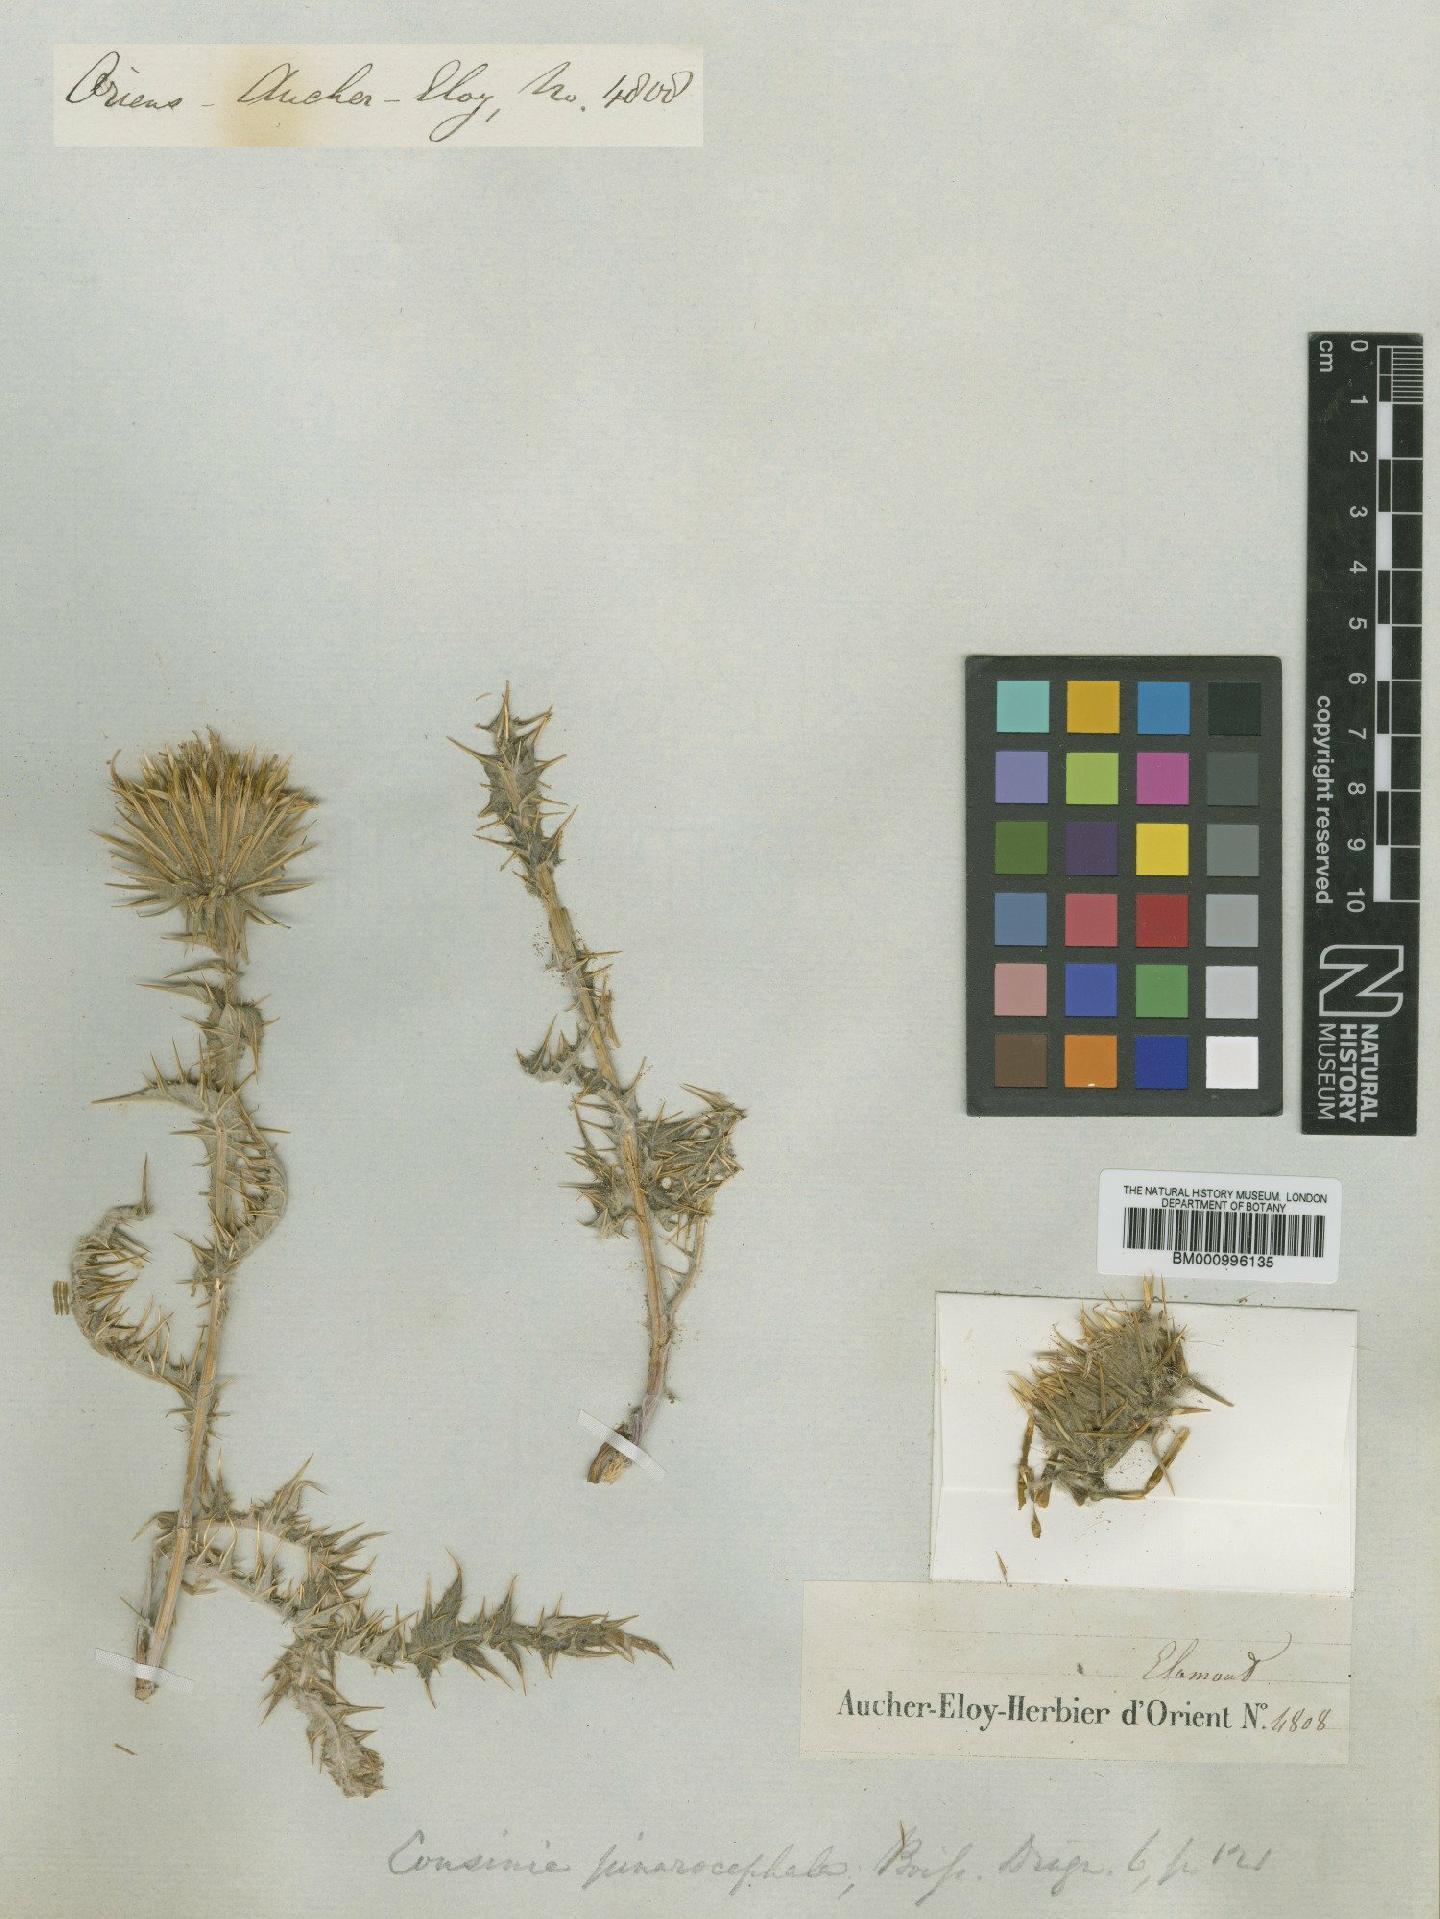 To NHMUK collection (Cousinia pinarocephala Boiss.; Type; NHMUK:ecatalogue:475861)